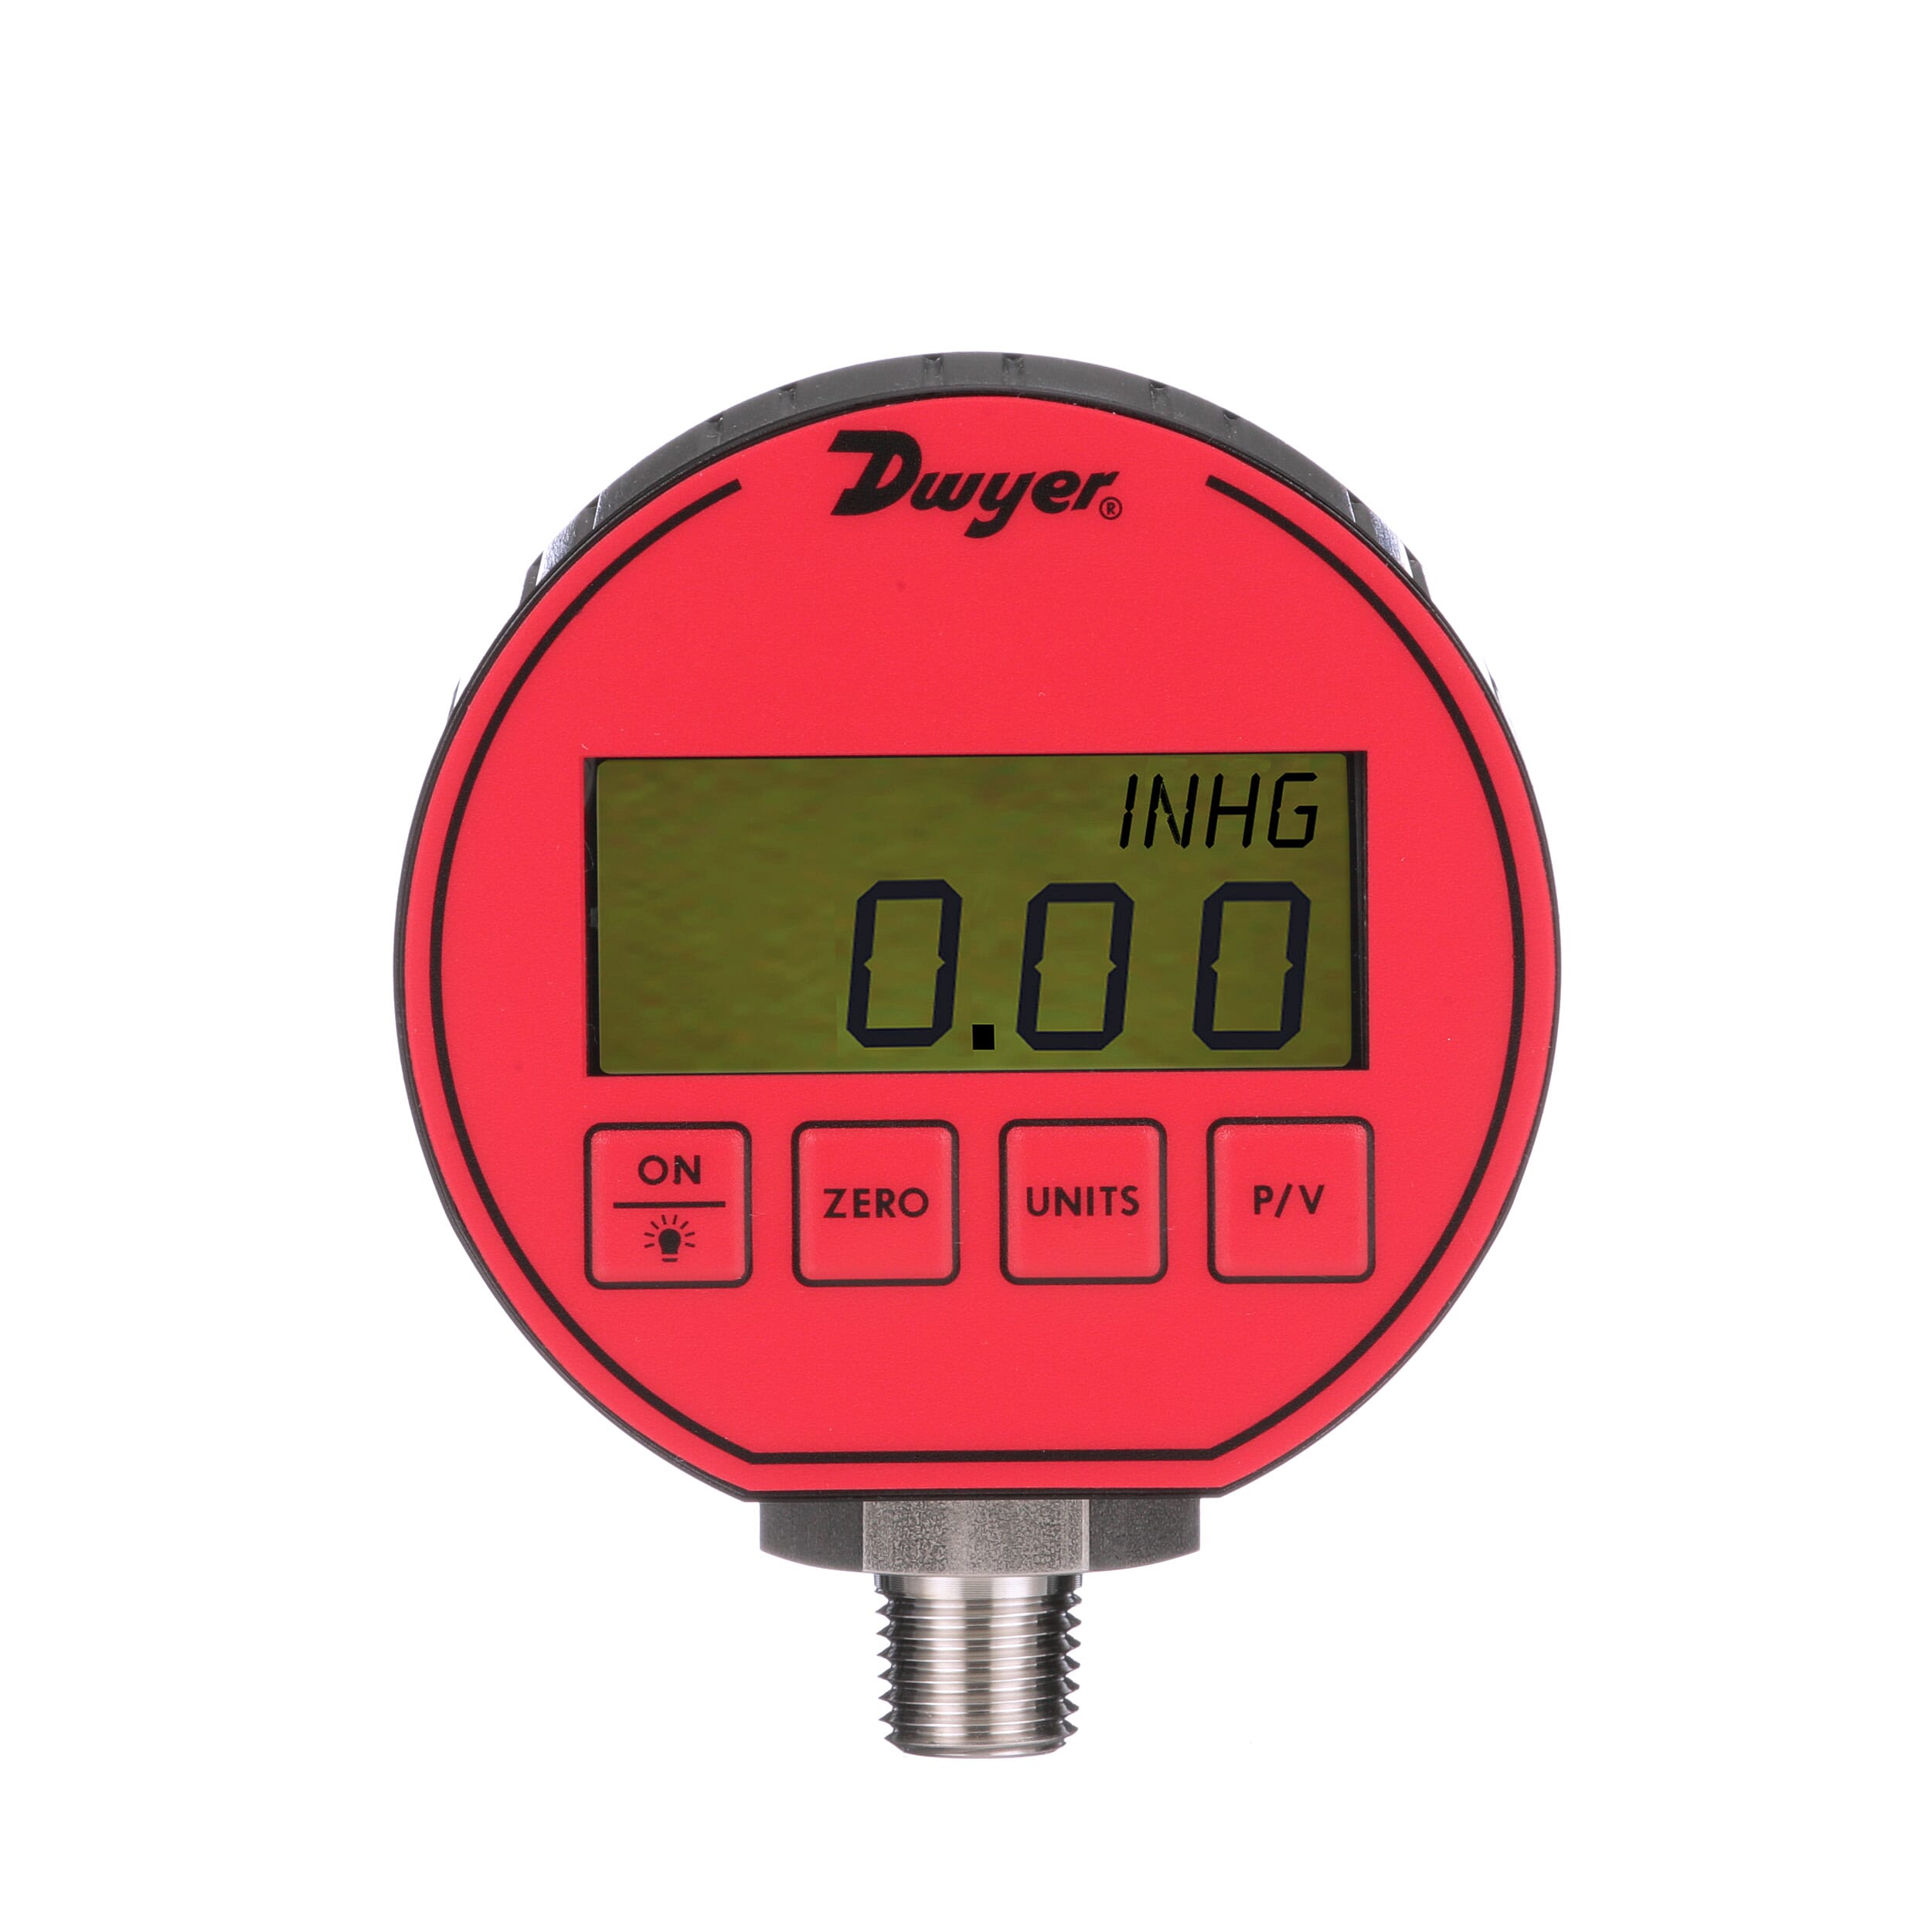 Range 30 Hg-0-100 psig +/-0.5% Full Scale Accuracy Dwyer DPG Series Digital Pressure Gauge